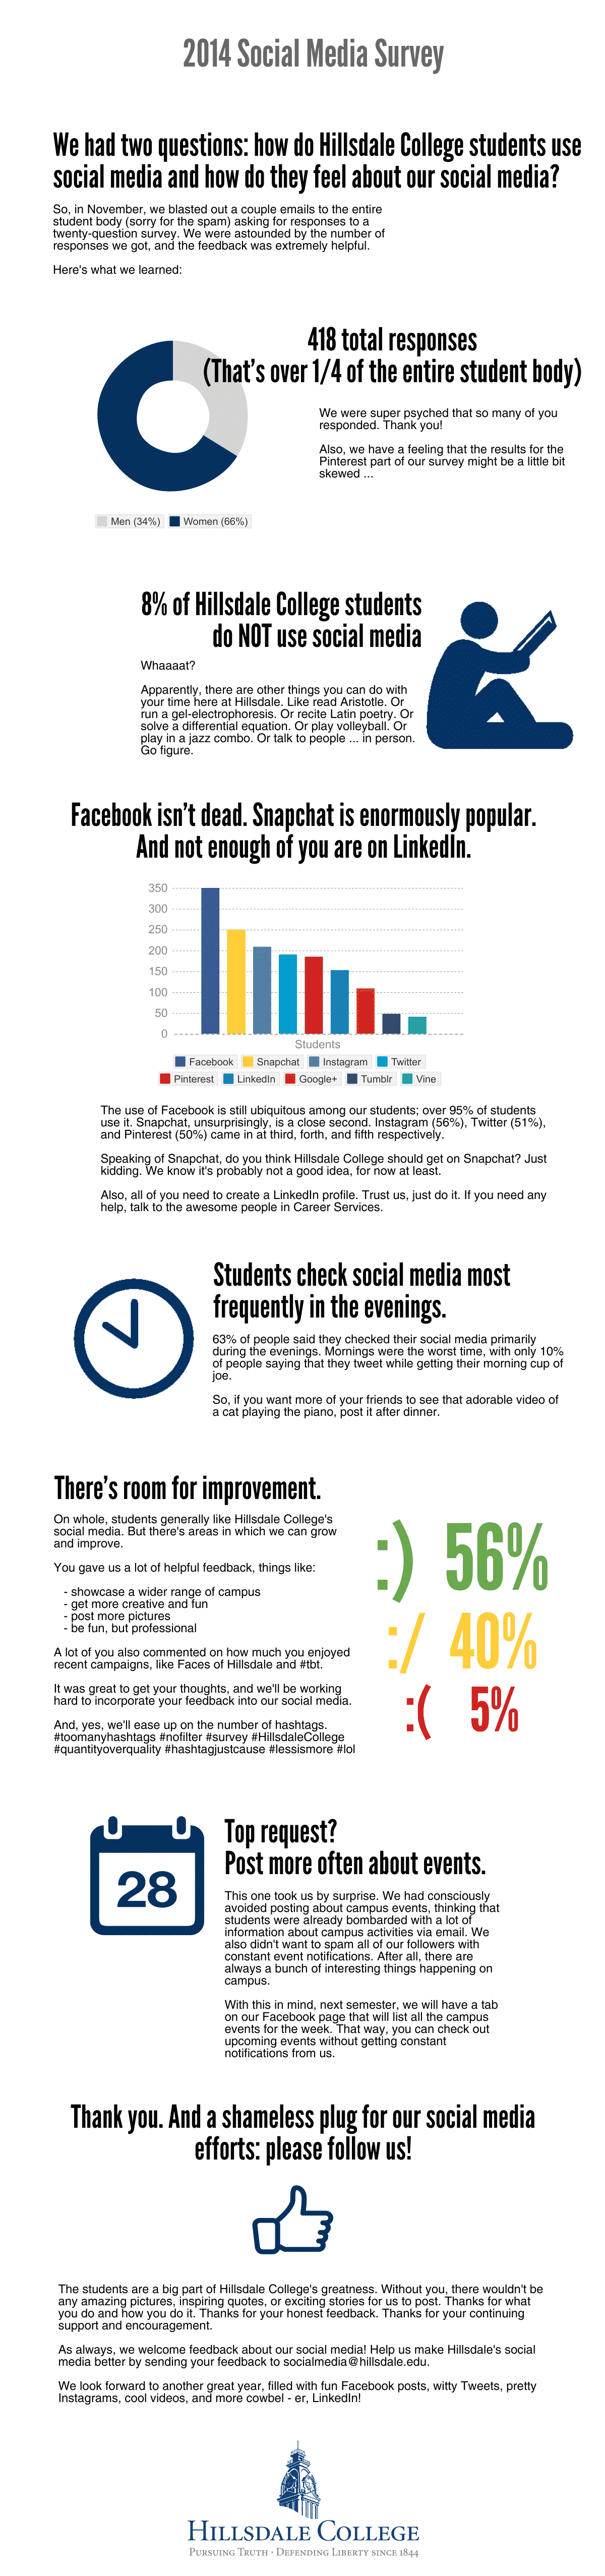 2014-Social-Media-Survey